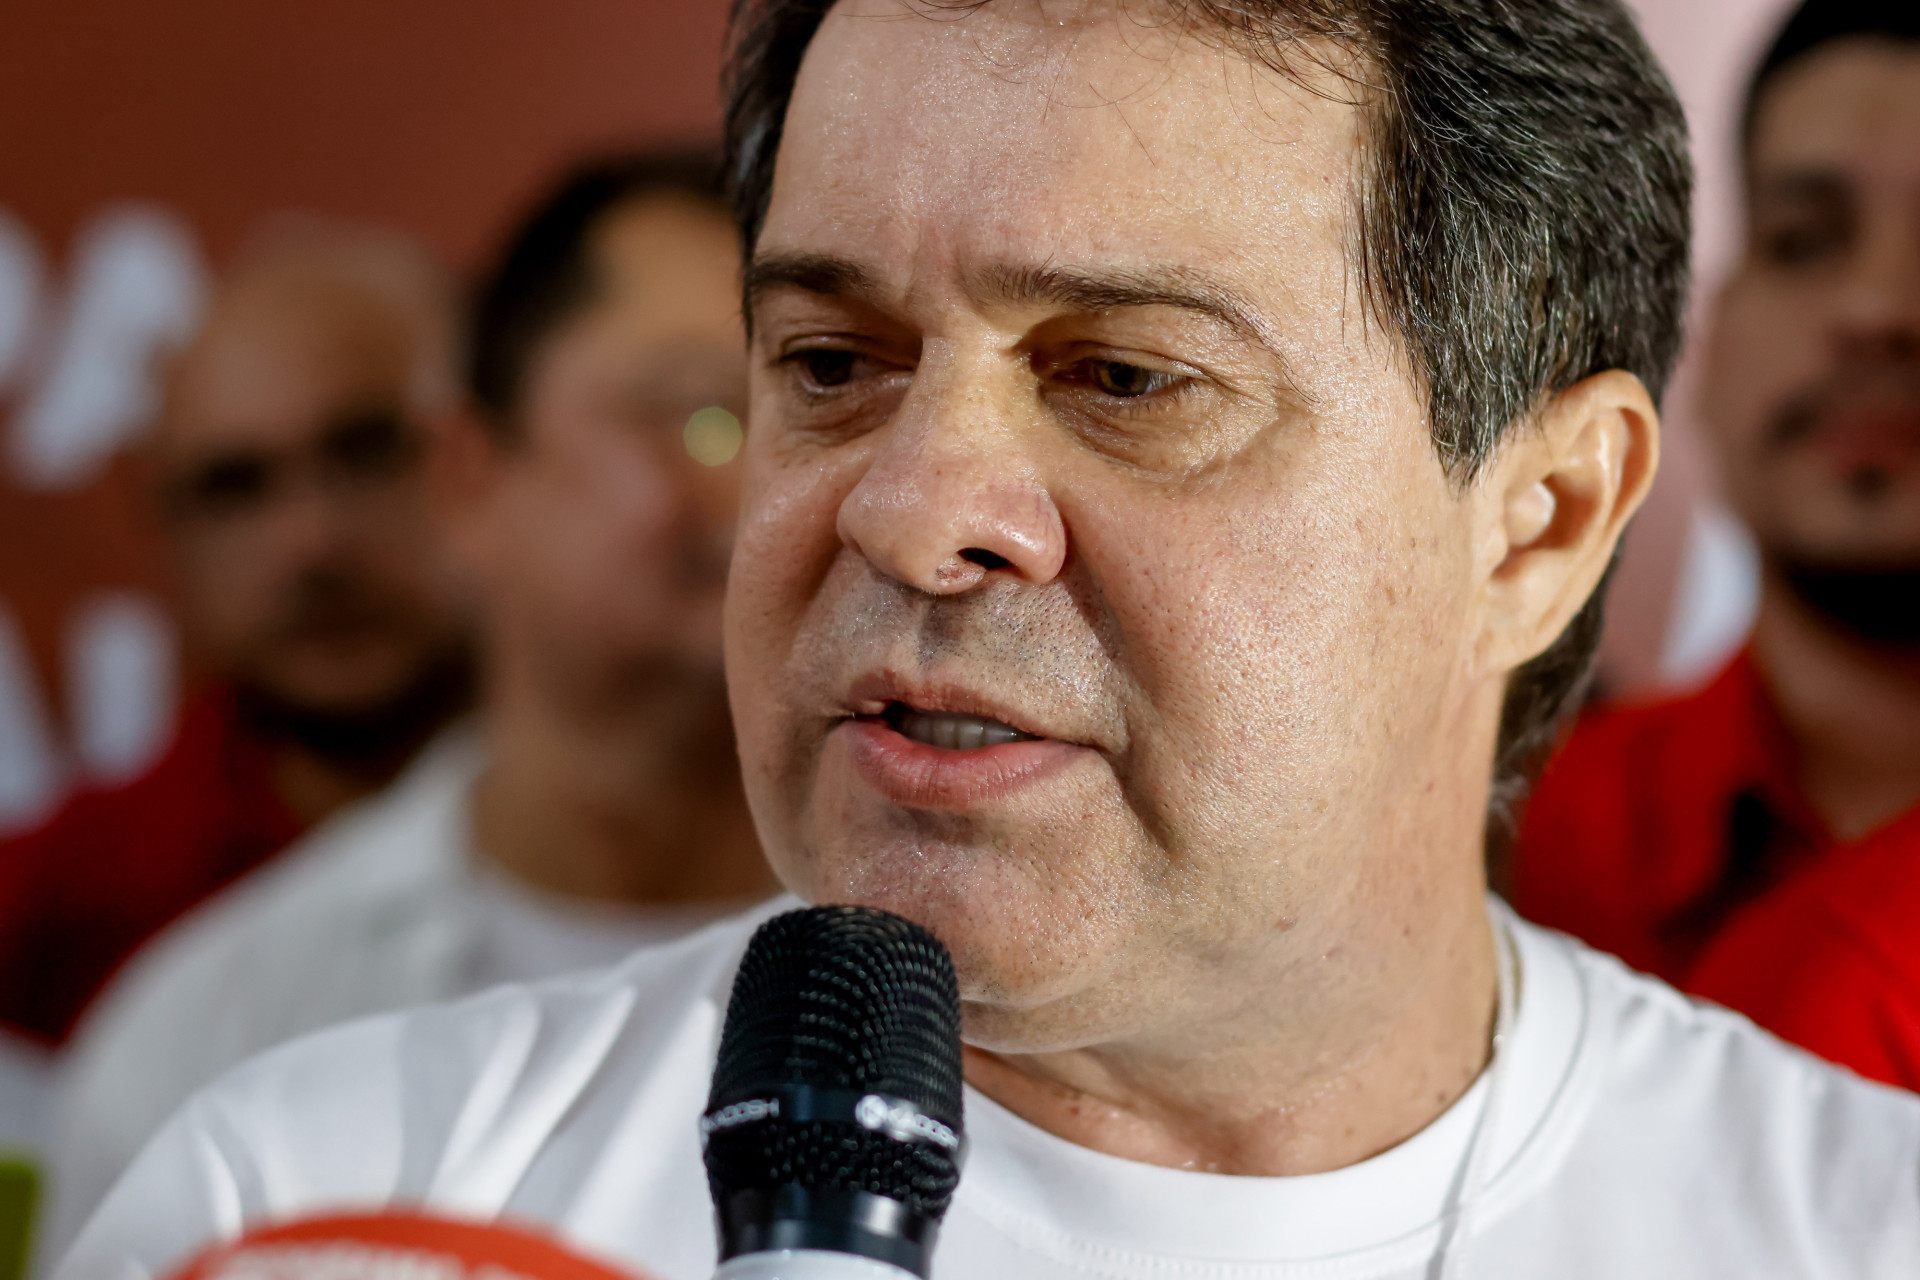 Evandro Leitão foi escolhido candidato do PT a prefeito de Fortaleza (Foto: AURÉLIO ALVES)